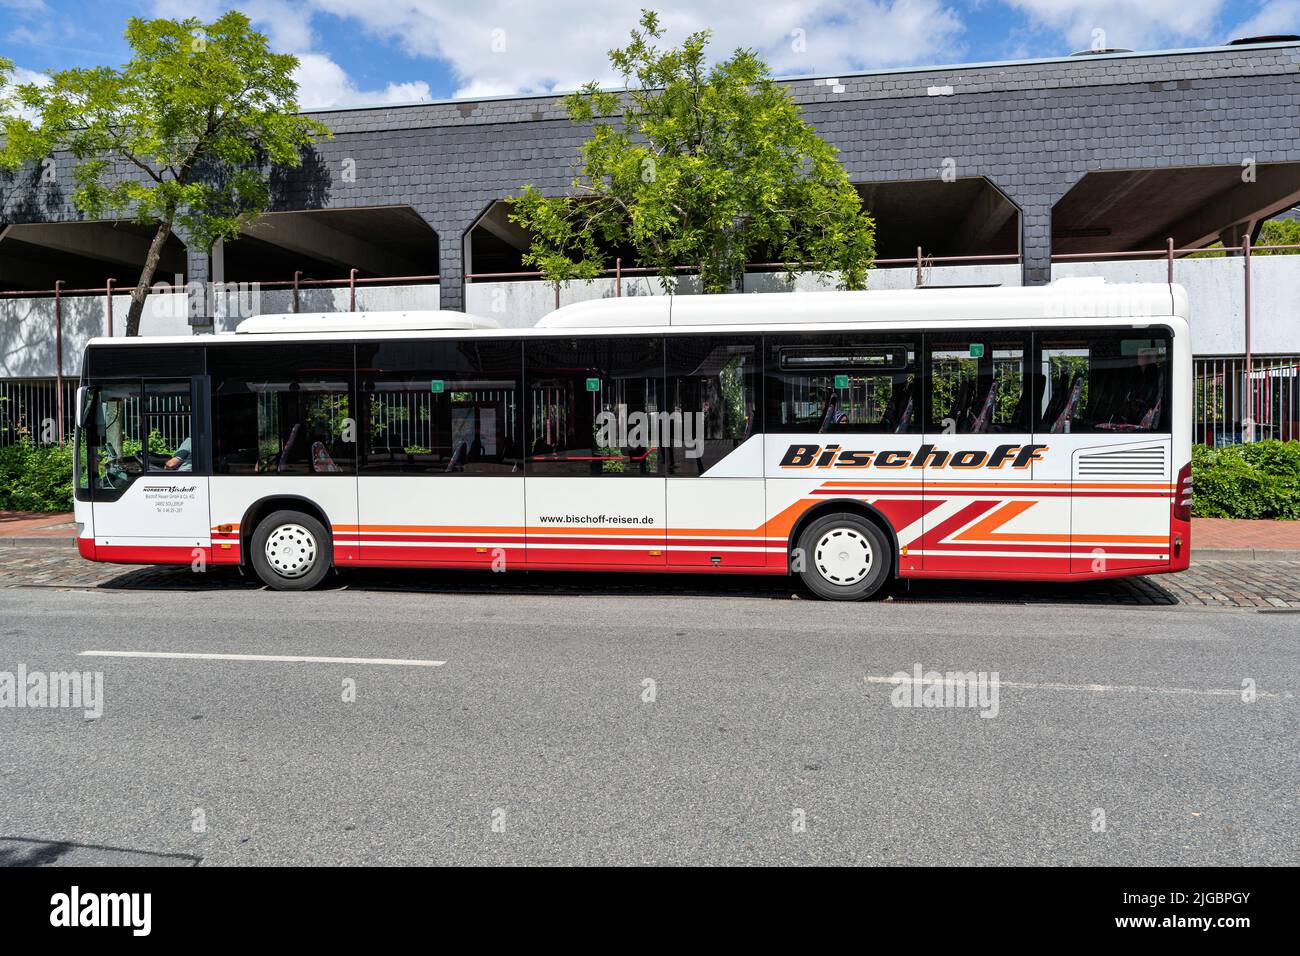 Bischoff Reisen bus in Schleswig, Germany Stock Photo